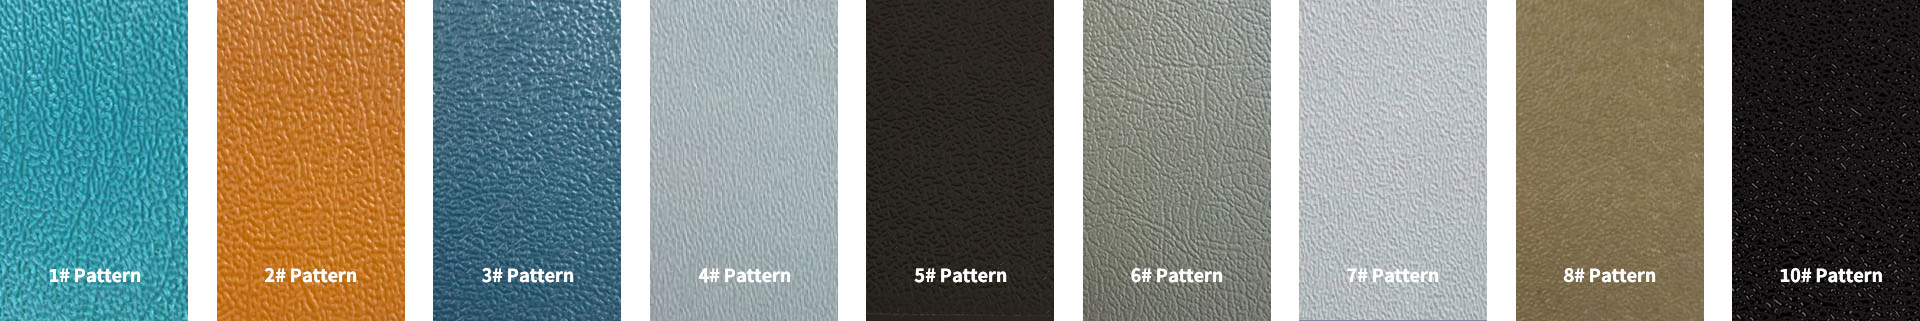 ABS板材图案板-颜色